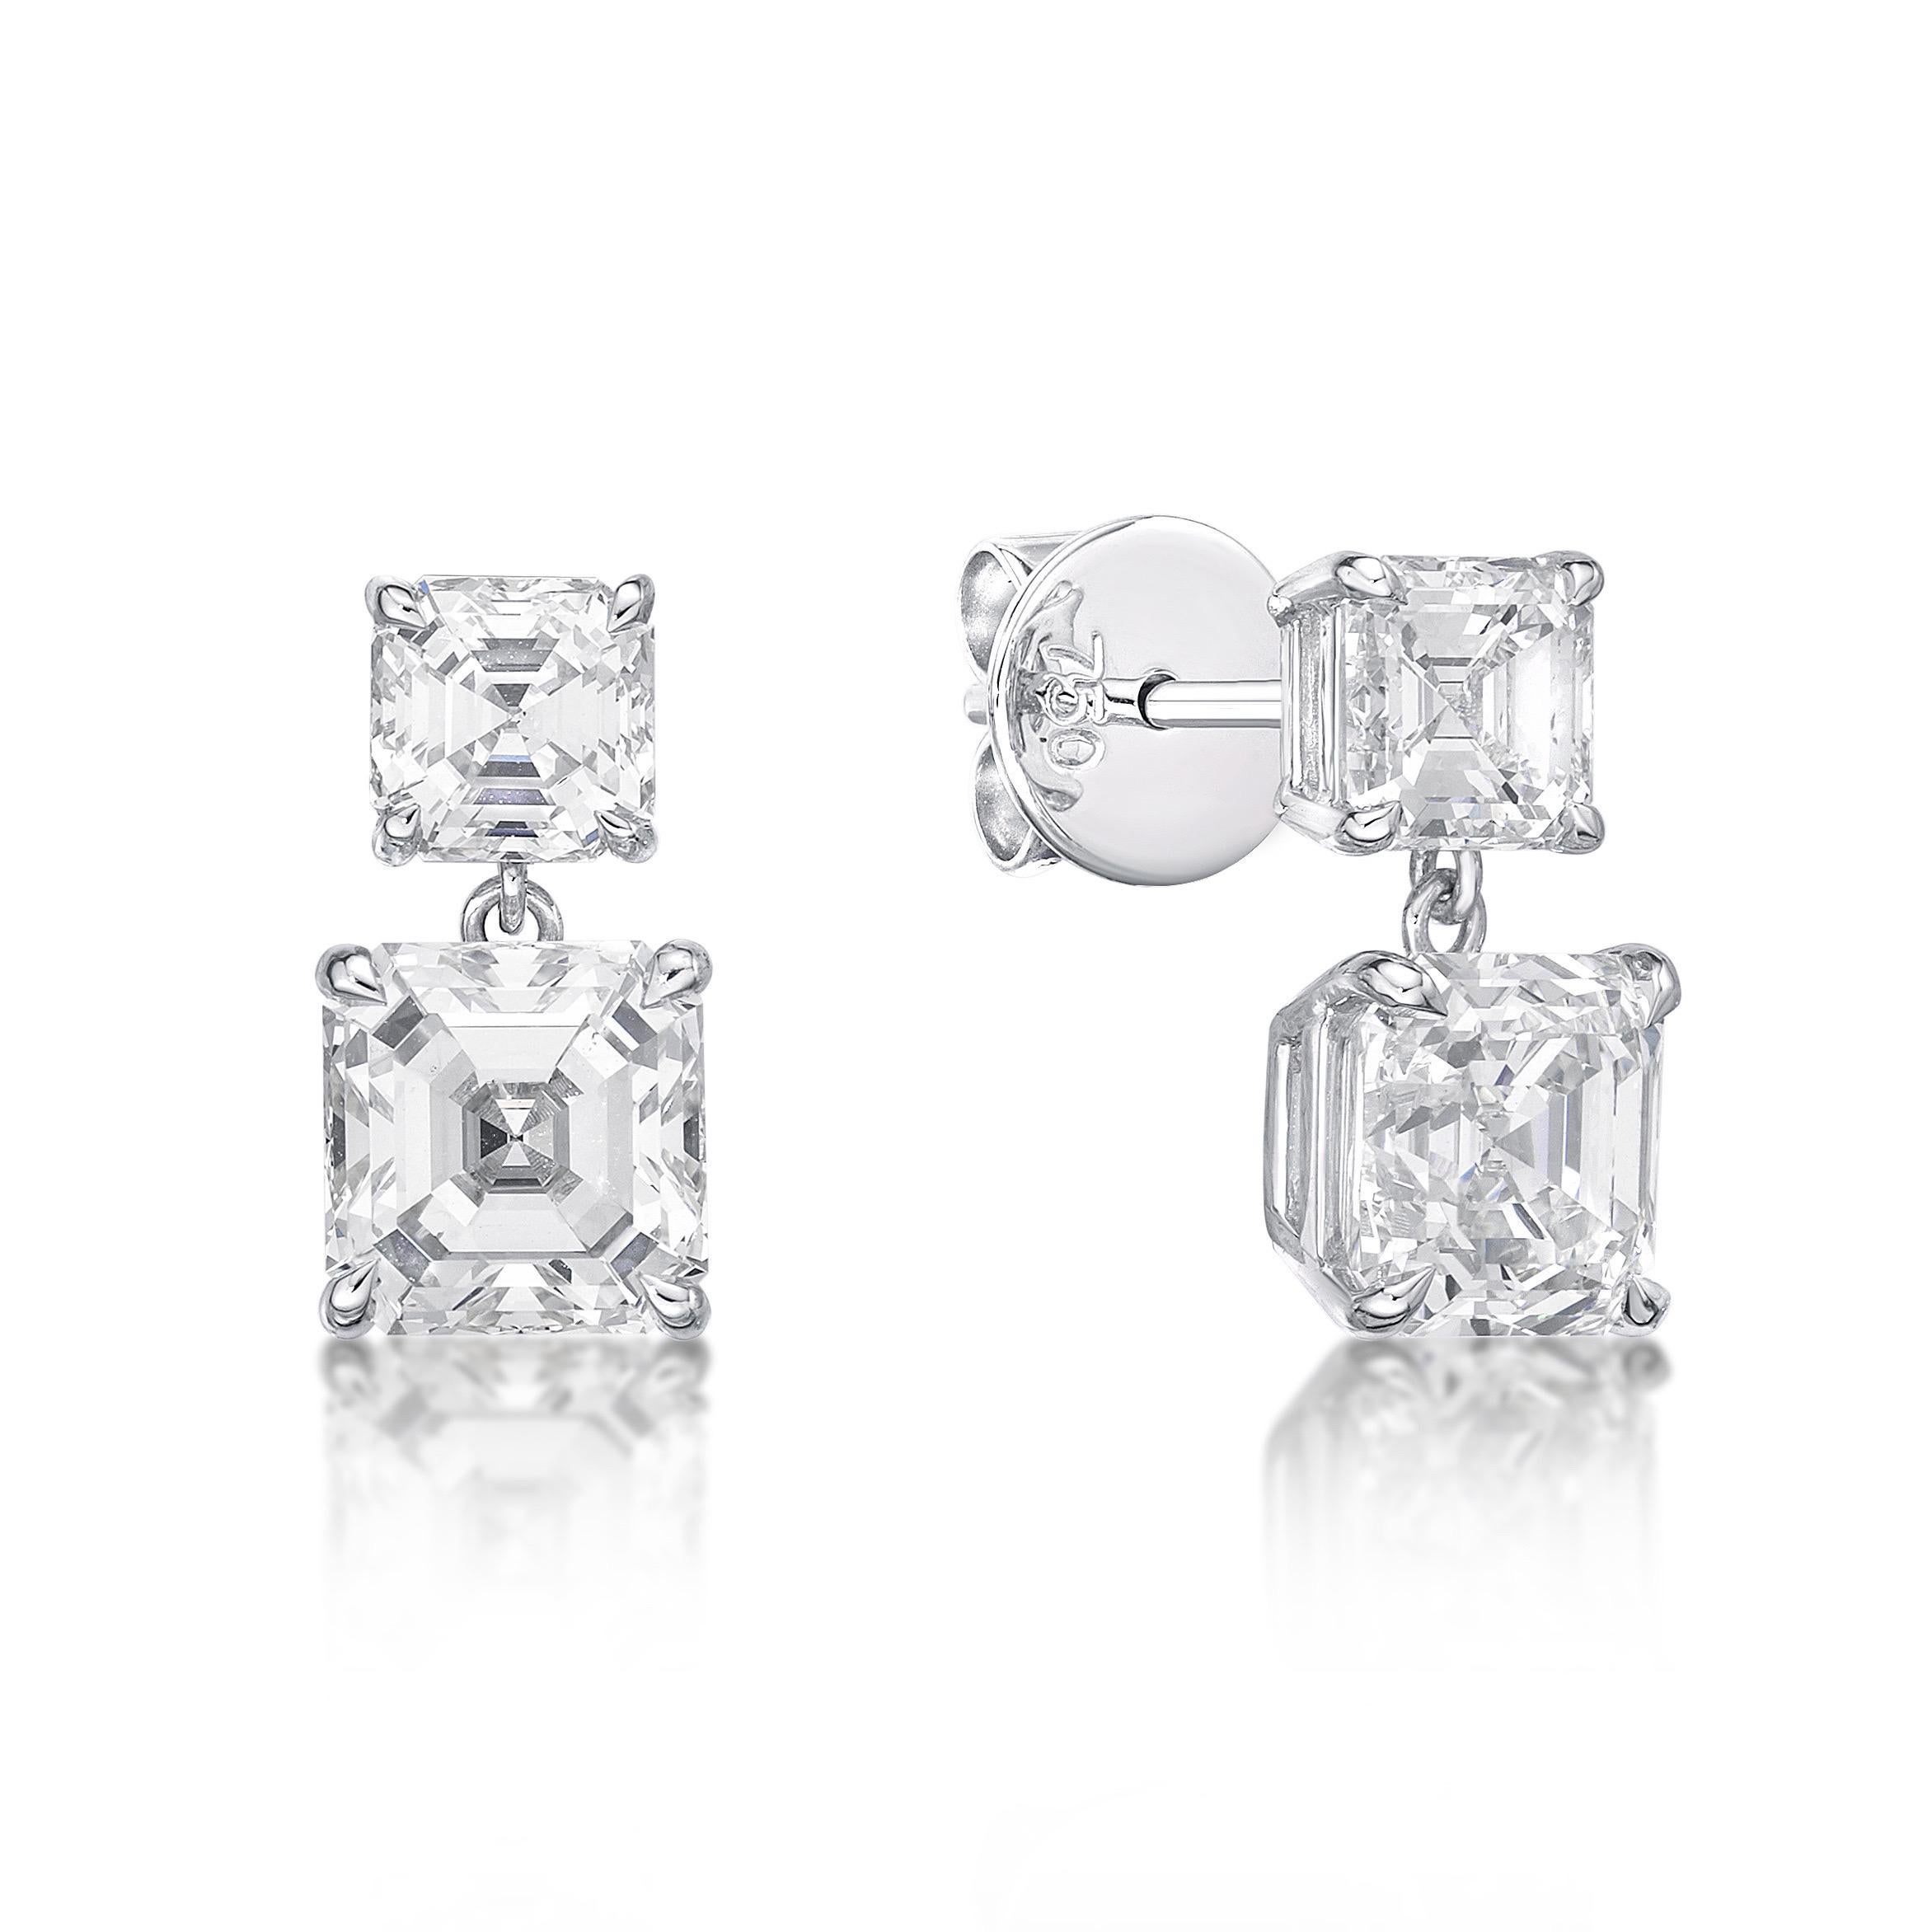 asscher cut diamond earrings 1 carat